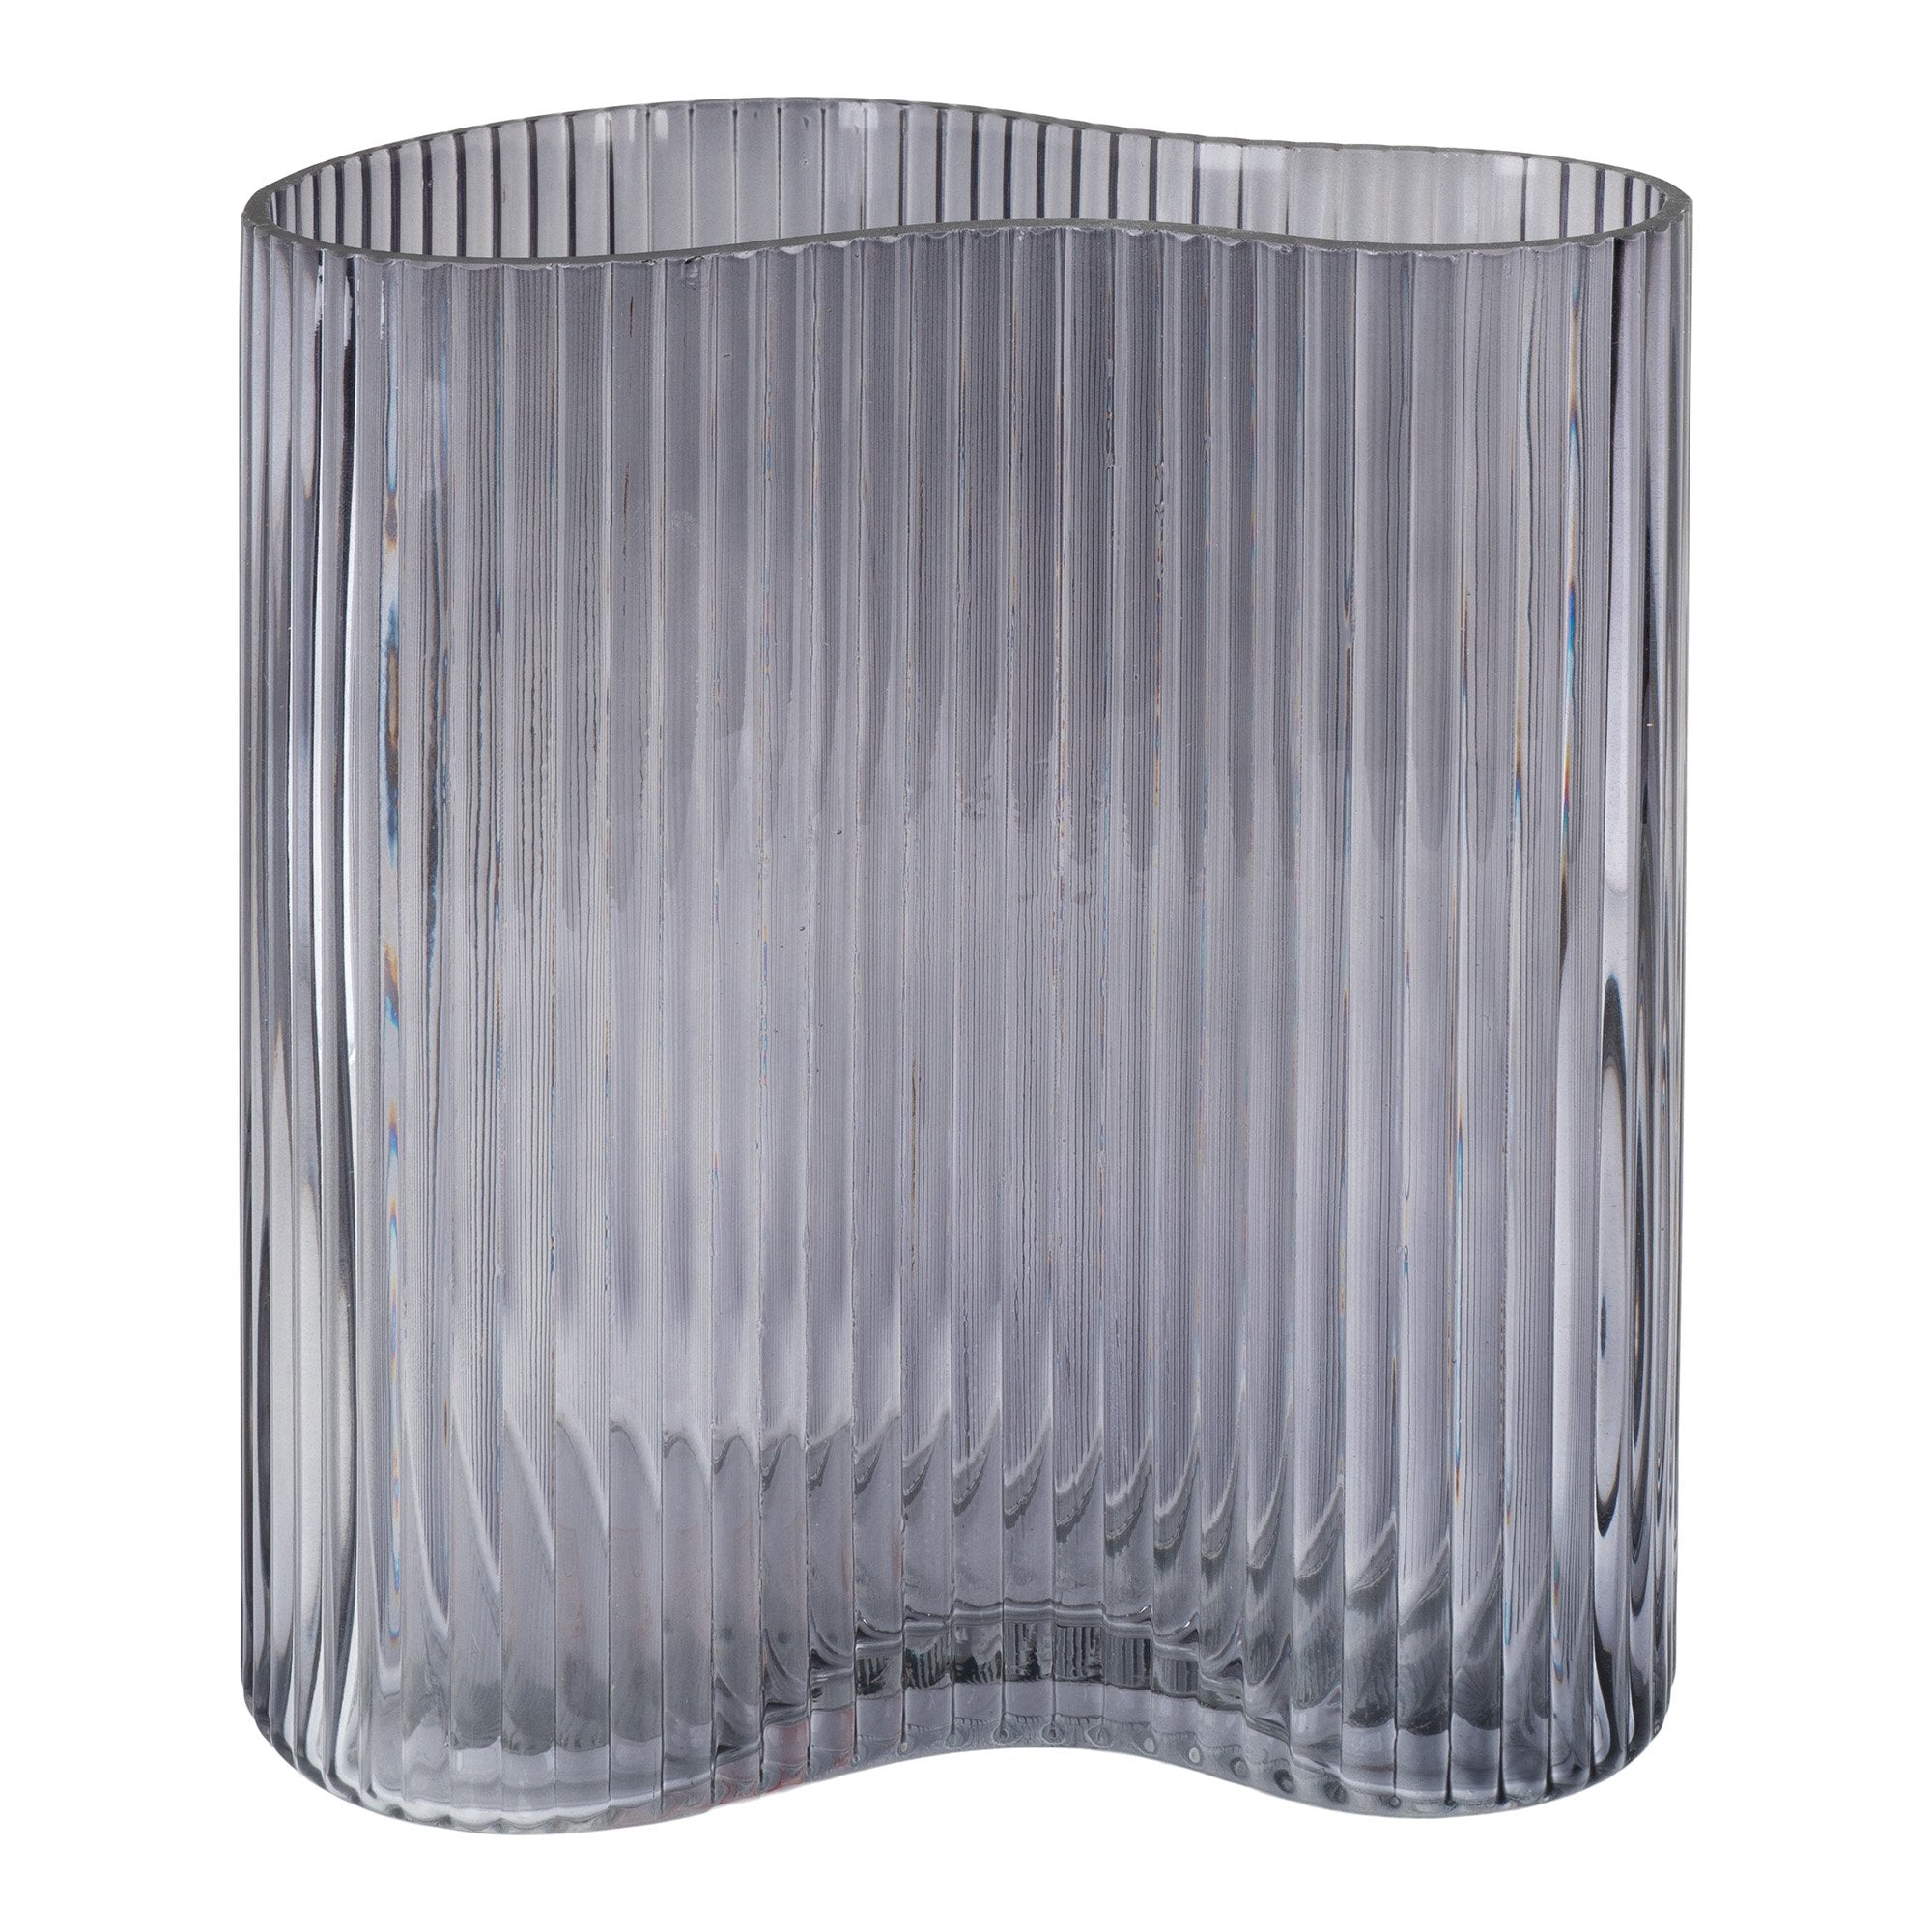 Vase - Vase I Glas, Smoked, Organisk Form, 12X19X20 Cm ⎮ 5713917019755 ⎮ 4441205 